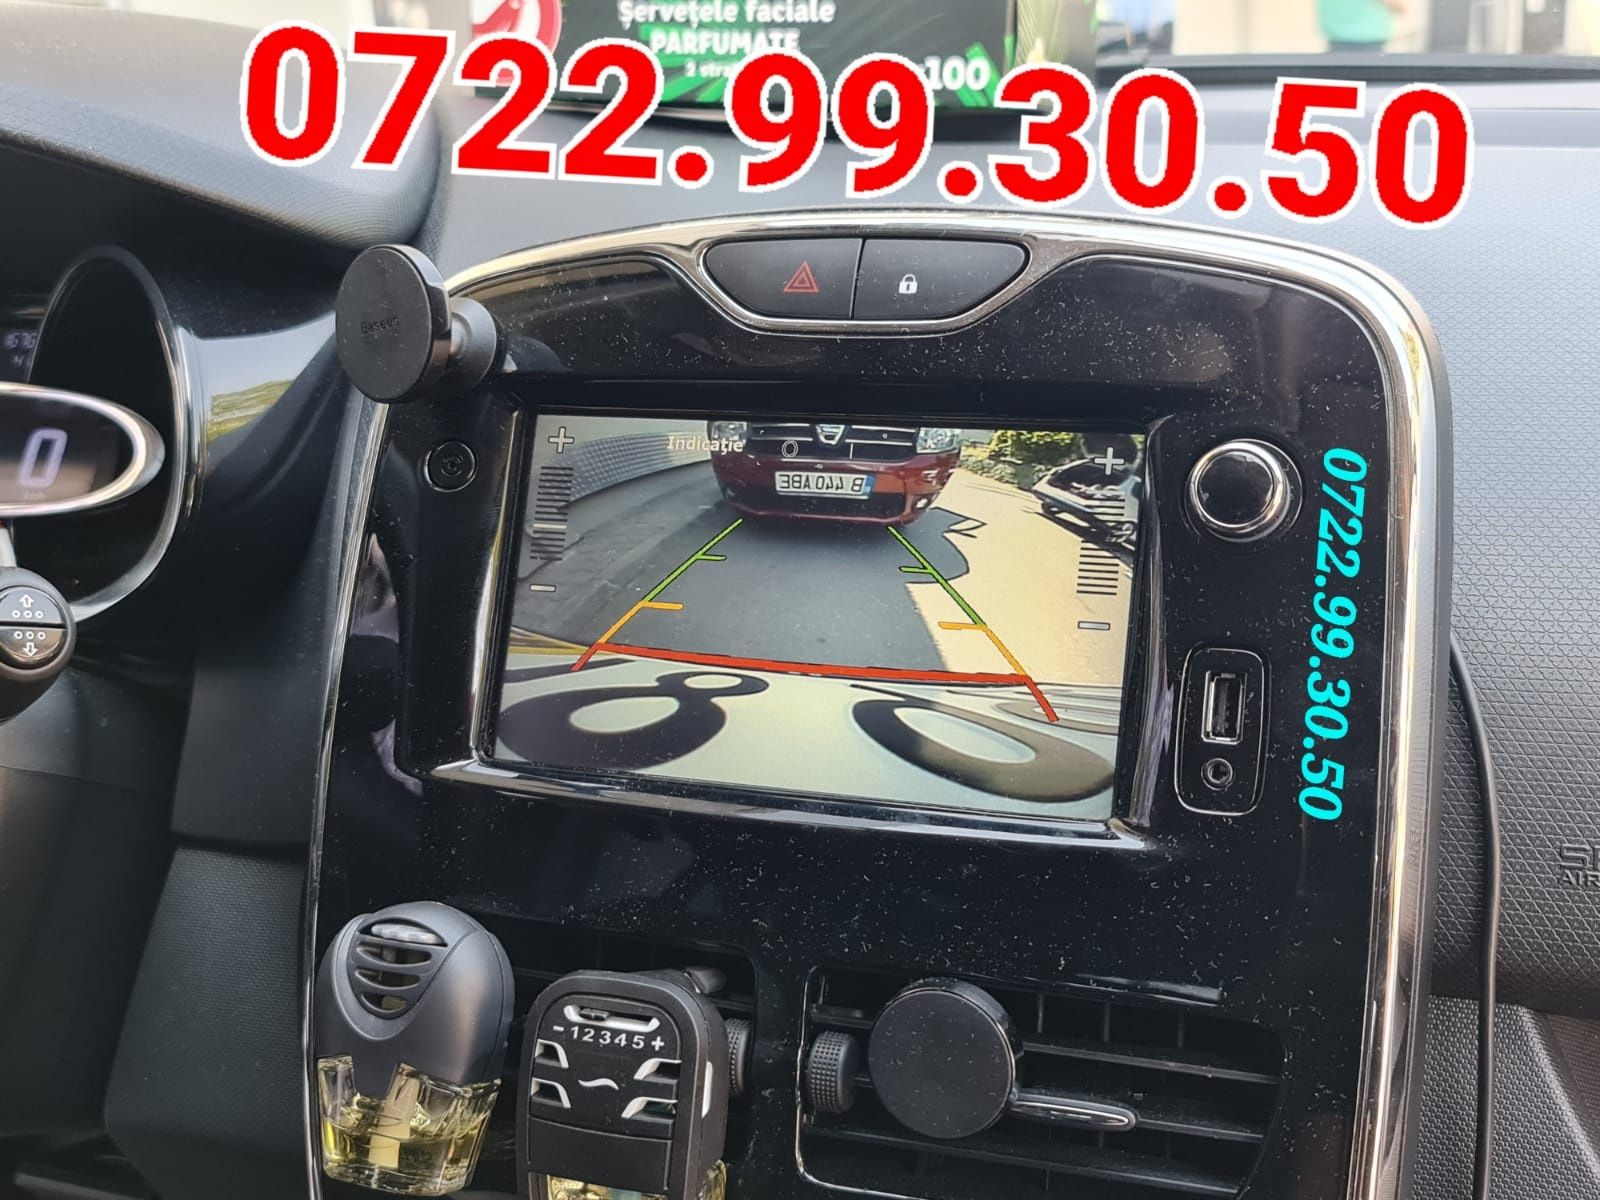 Harti Renault Clio 4 Captur Navigație MediaNav  Harta Full Cameră Rvc